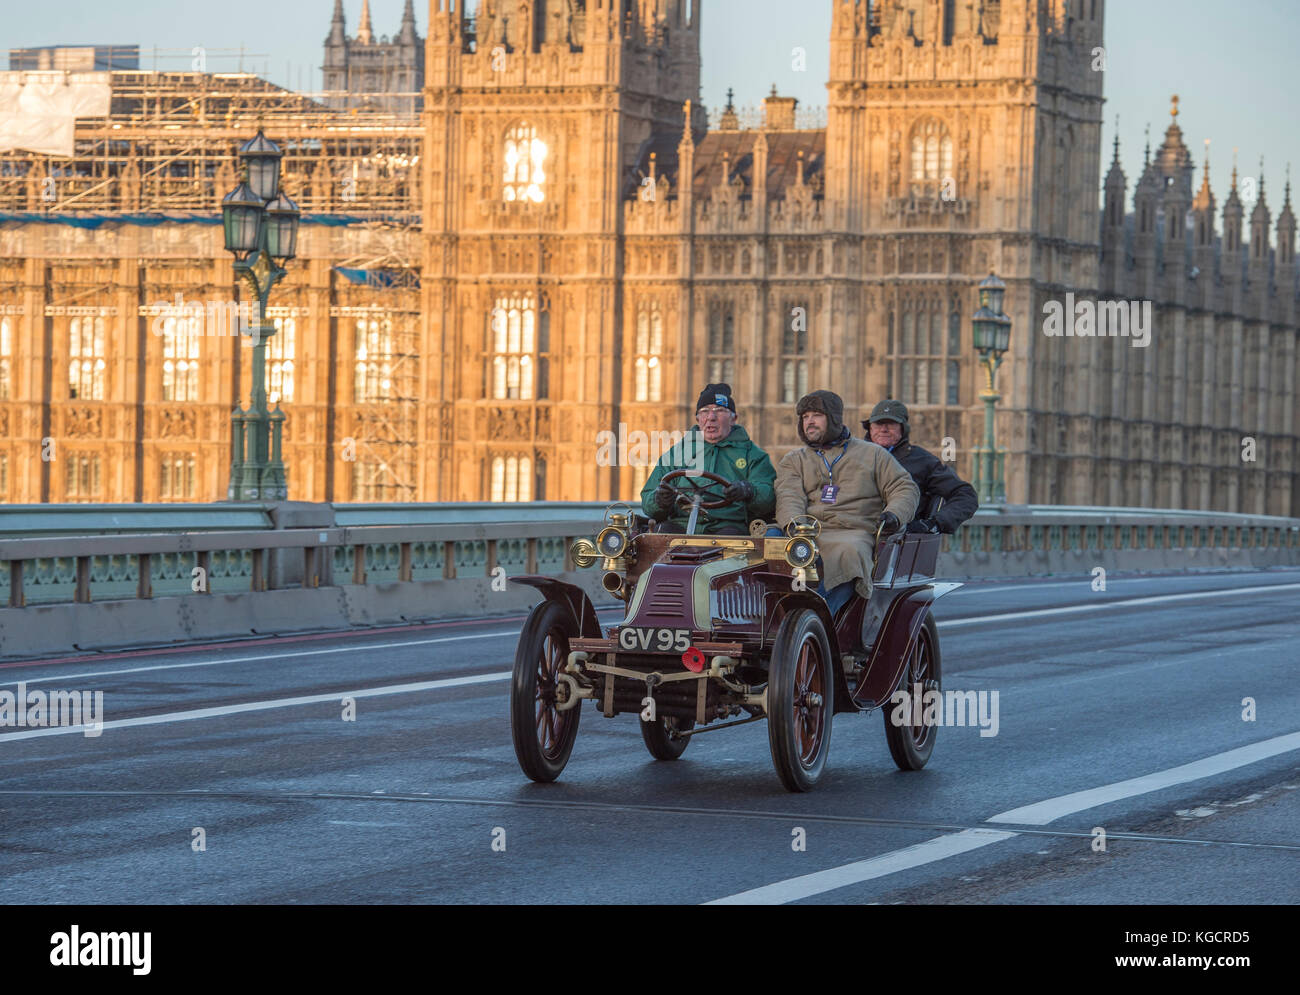 5 novembre 2017. Bonhams de Londres à Brighton, la course automobile de vétéran, la plus longue course automobile au monde, 1902 Darracq sur le pont de Westminster. Banque D'Images